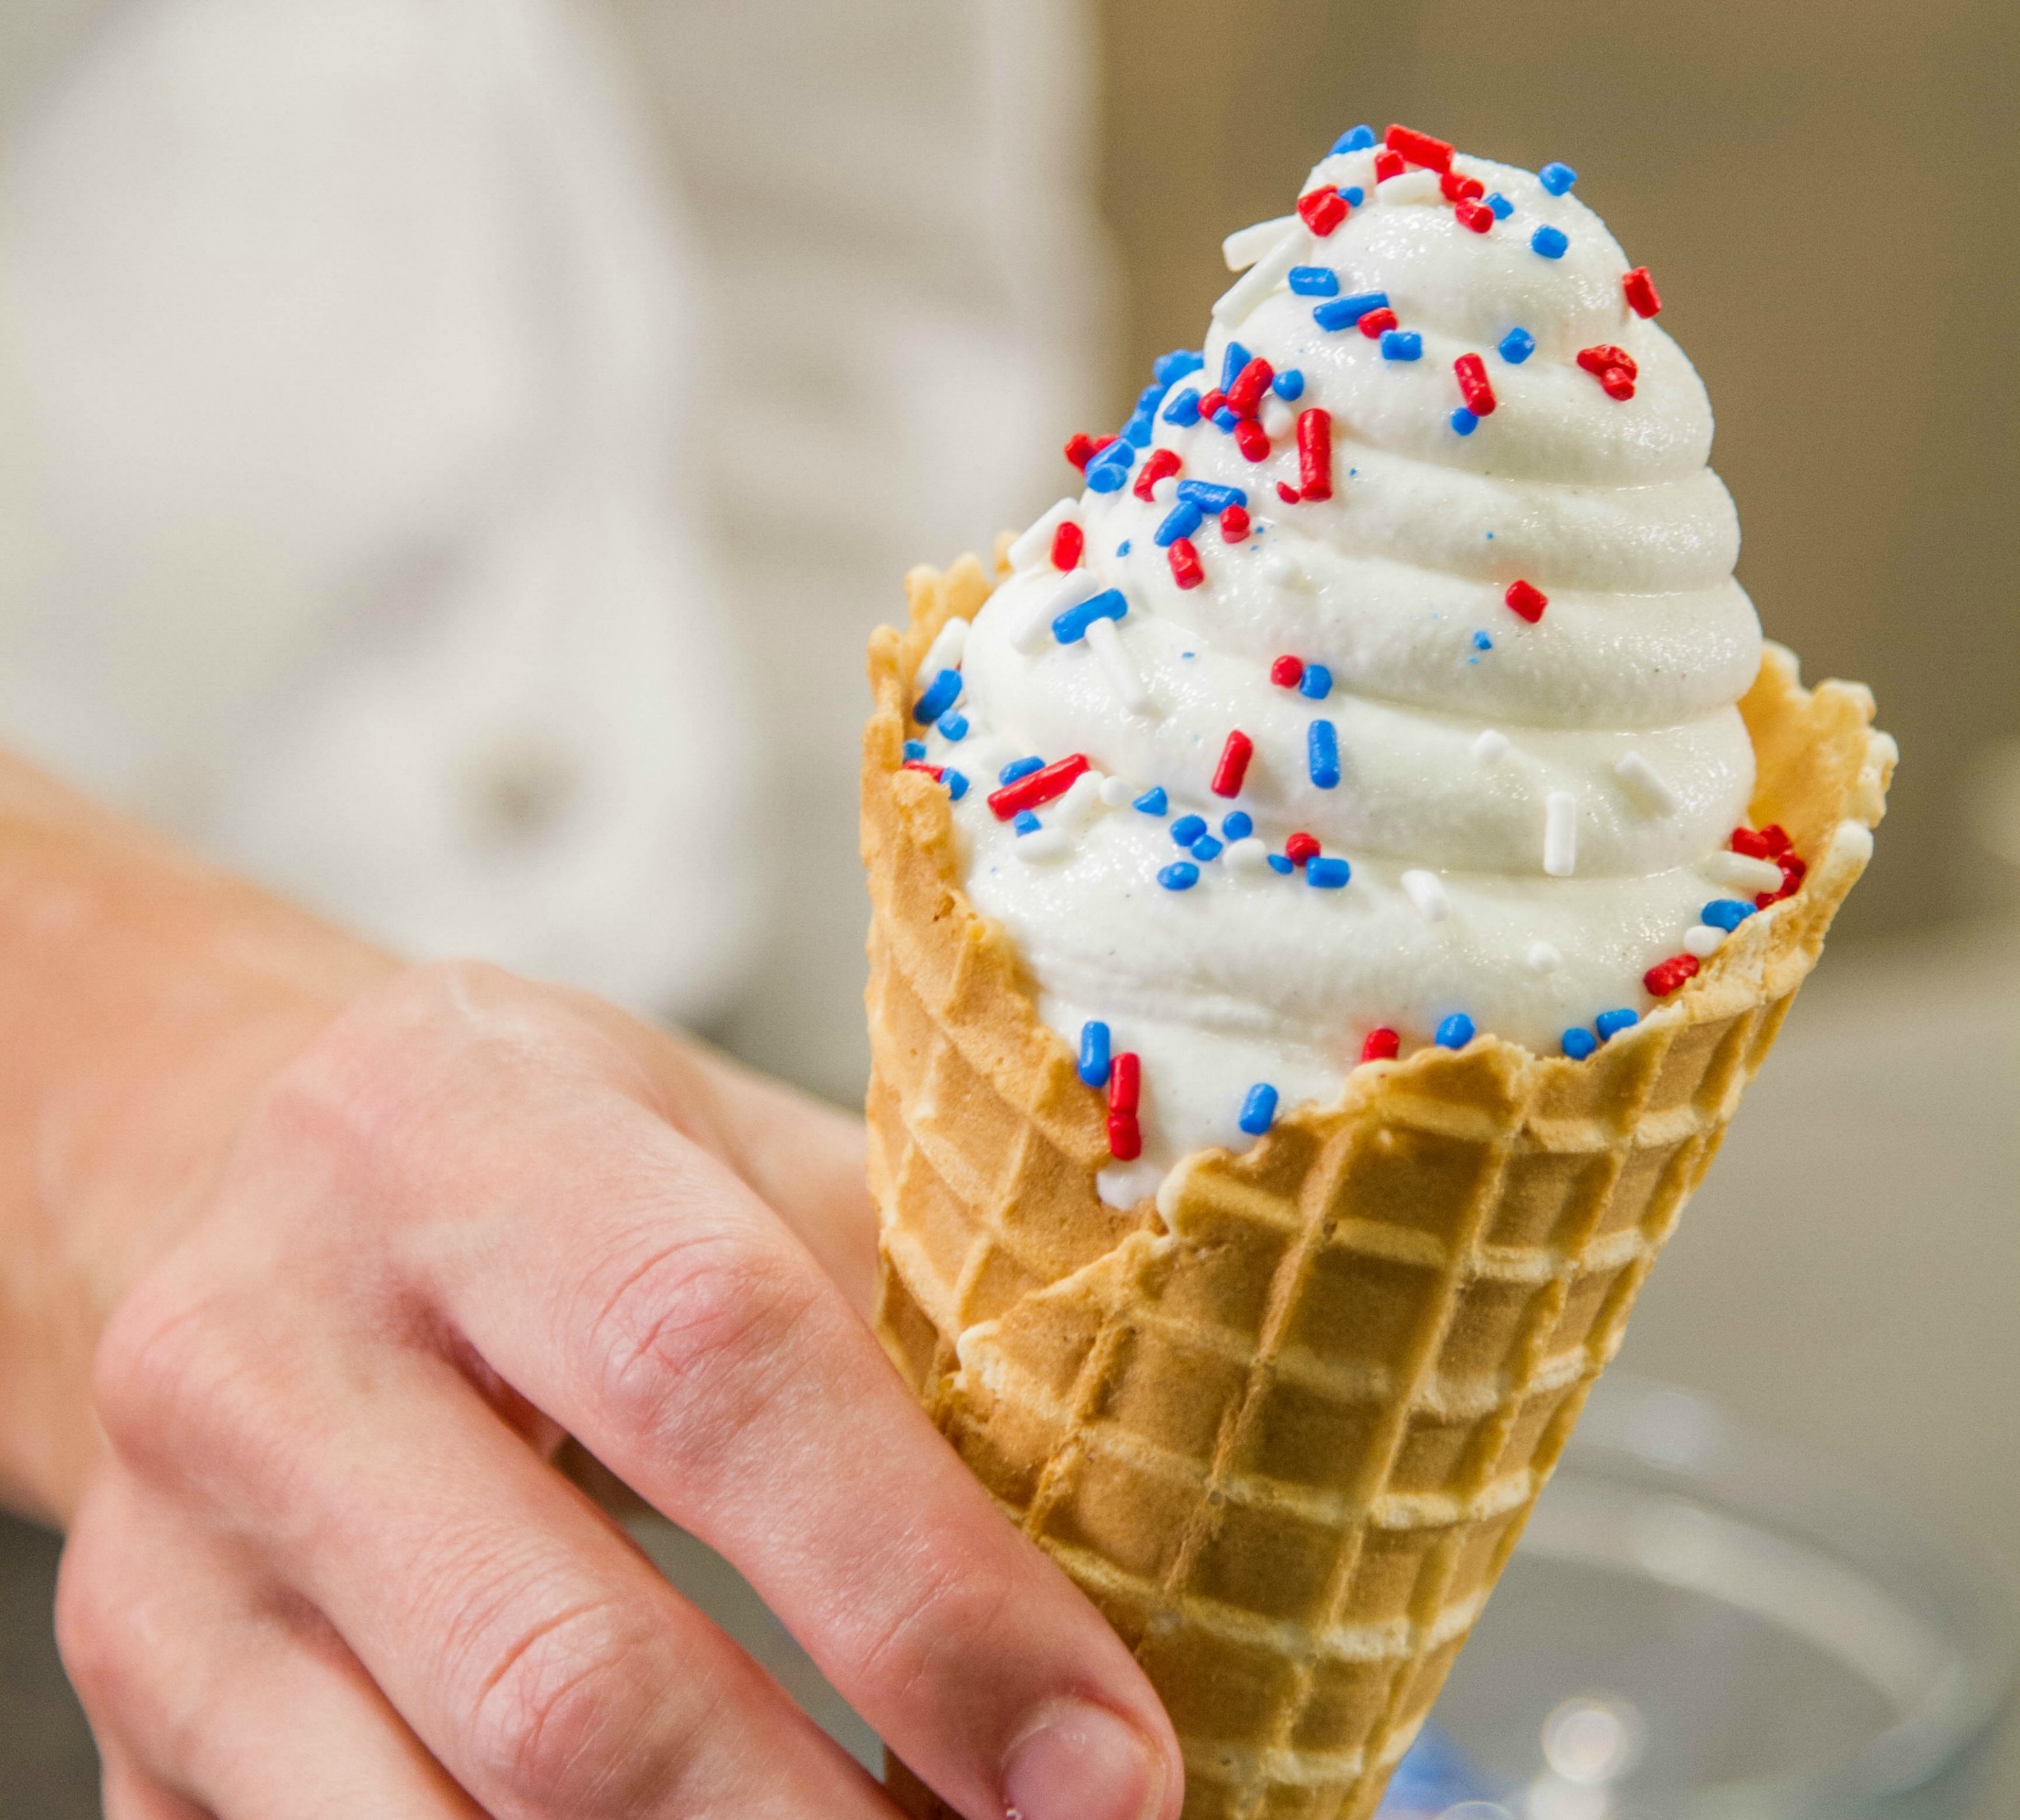 Ice cream scooper uses heat technology to soften ice cream